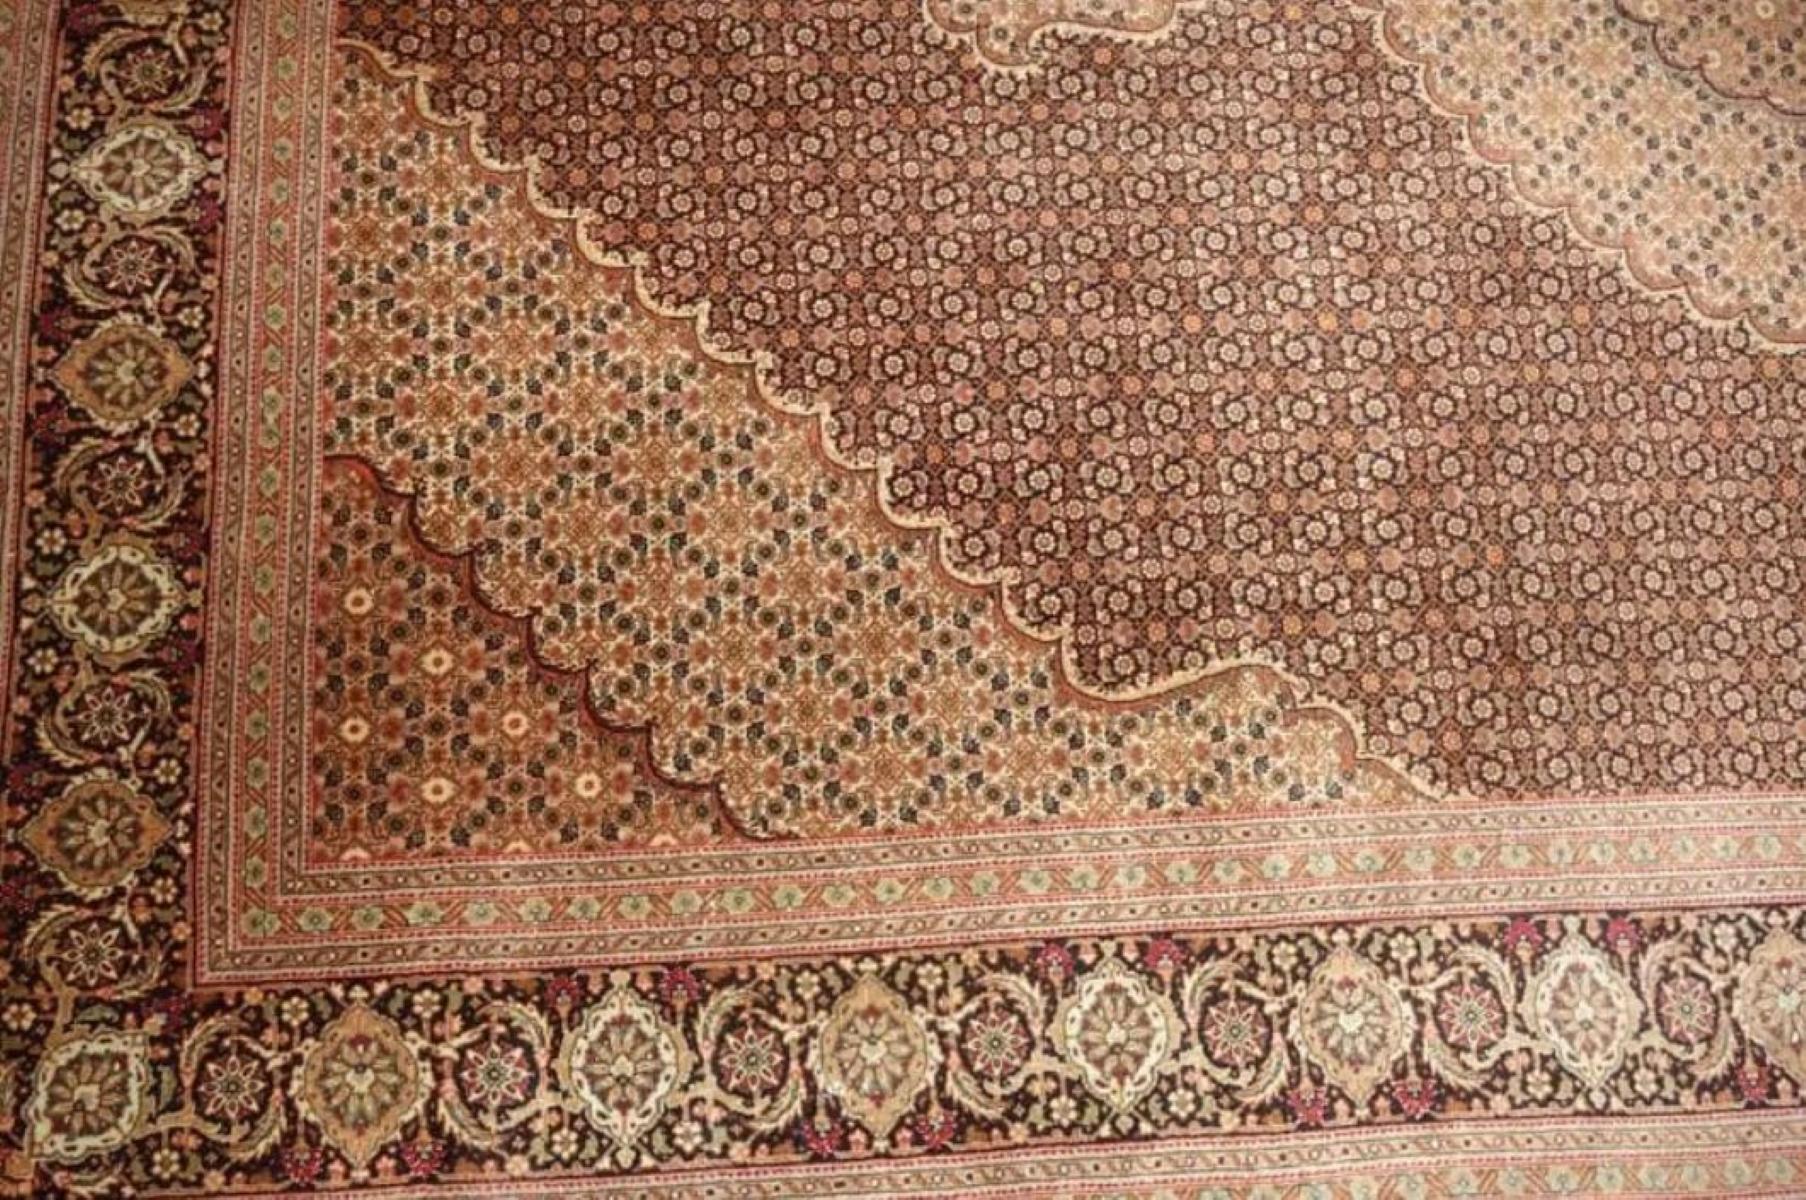 Very fine Persian Rug Bidjar 400 Knots per inch, Size 10 x 6.7